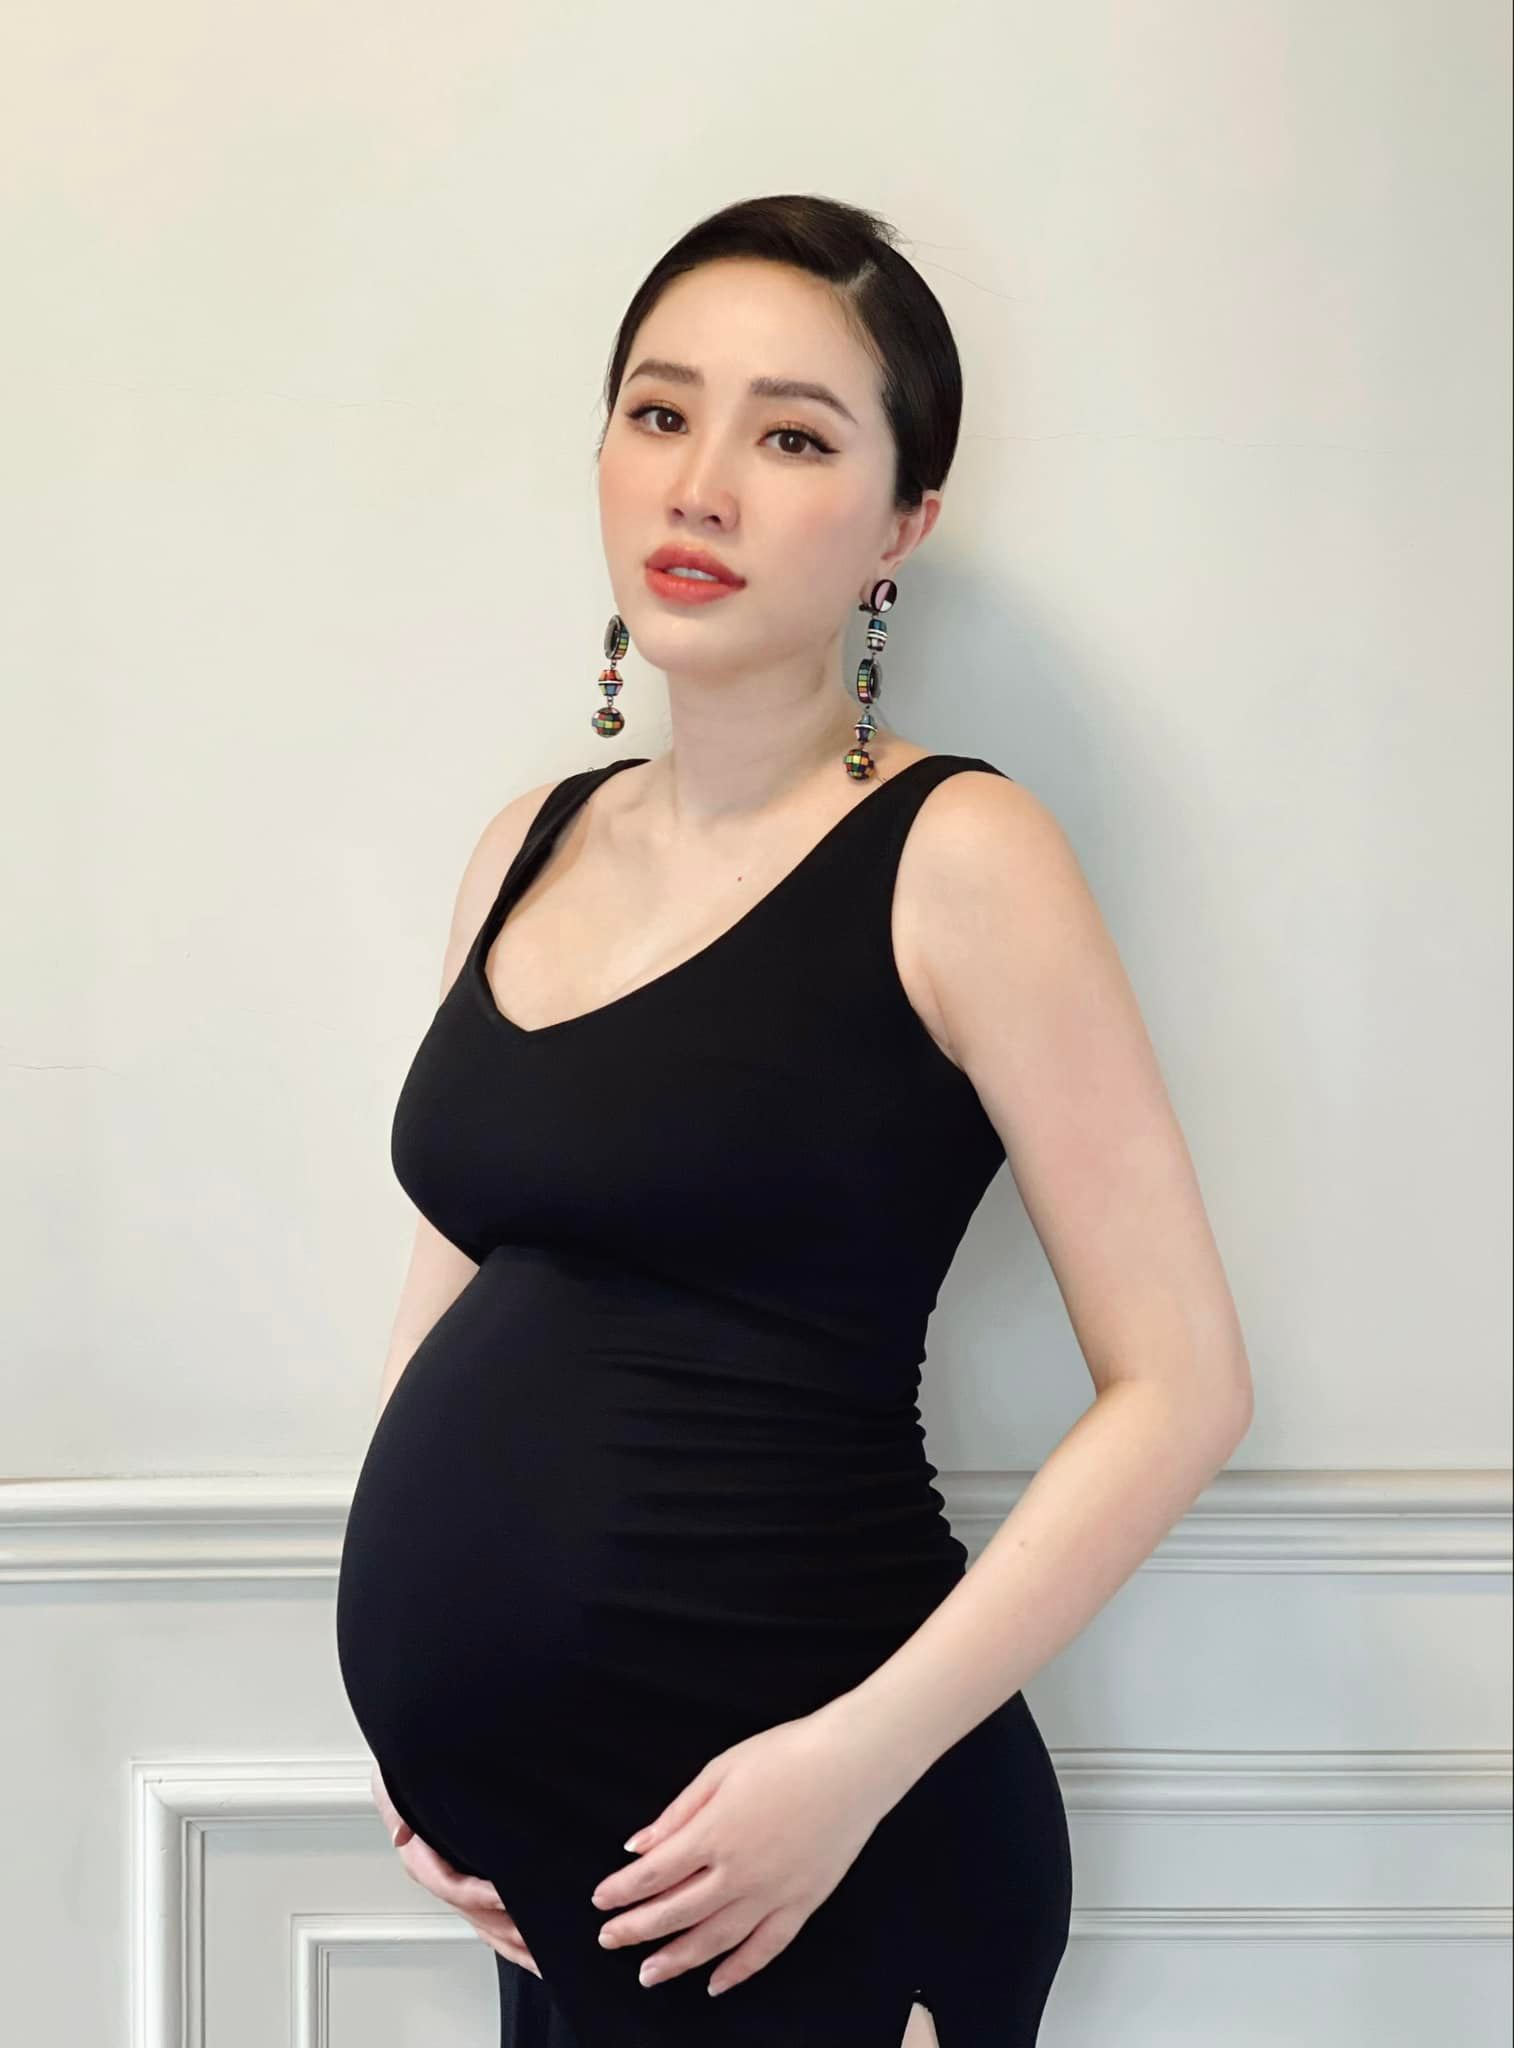 Ca sĩ Bảo Thy tung loạt ảnh ở tuần 36 thai kì, nhan sắc mẹ bầu rạng rỡ không tì vết - ảnh 6